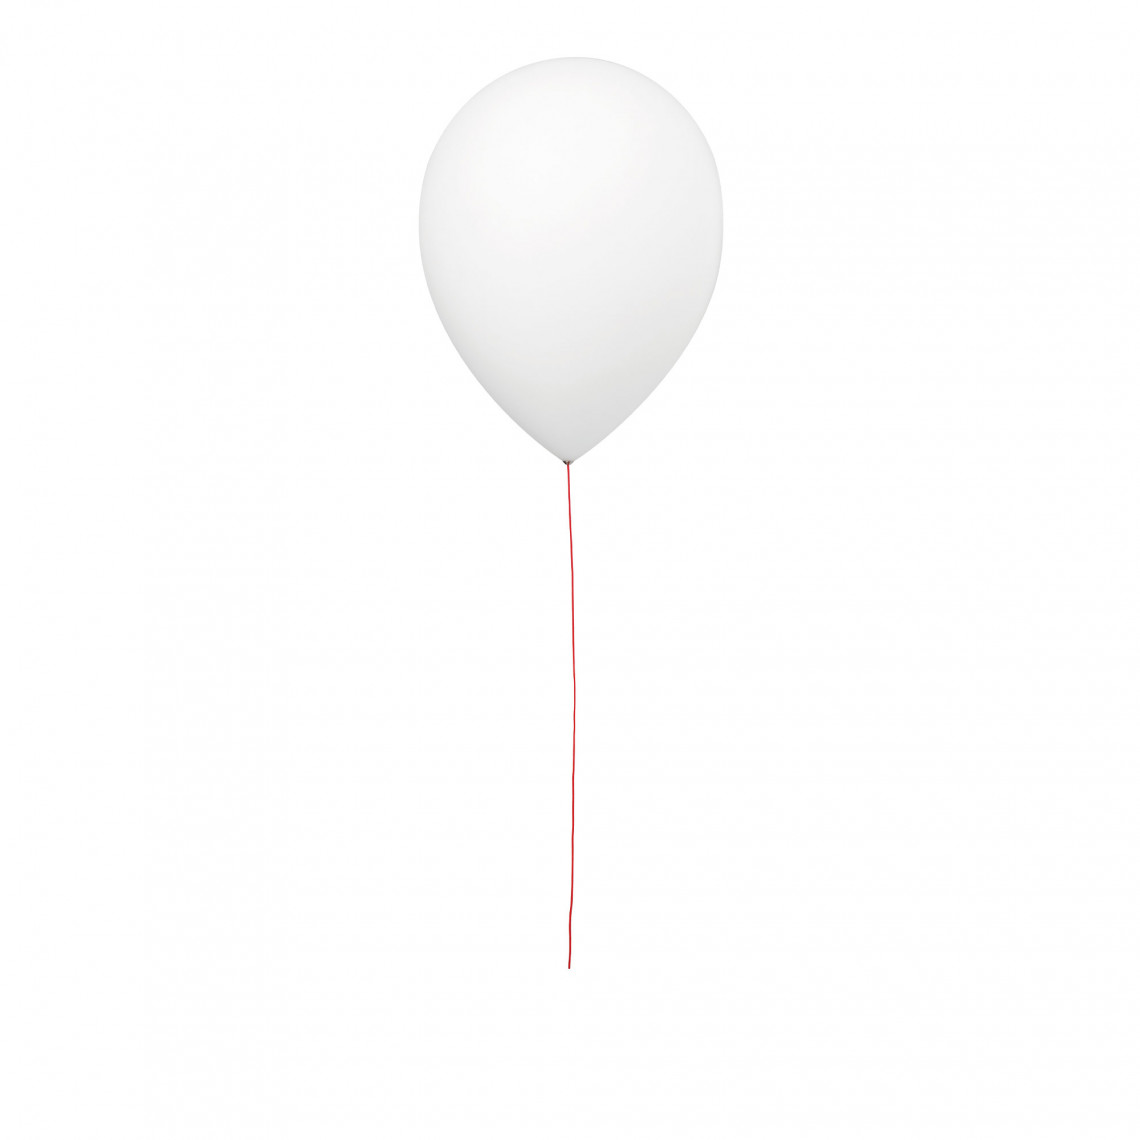 Balloon A-3050 